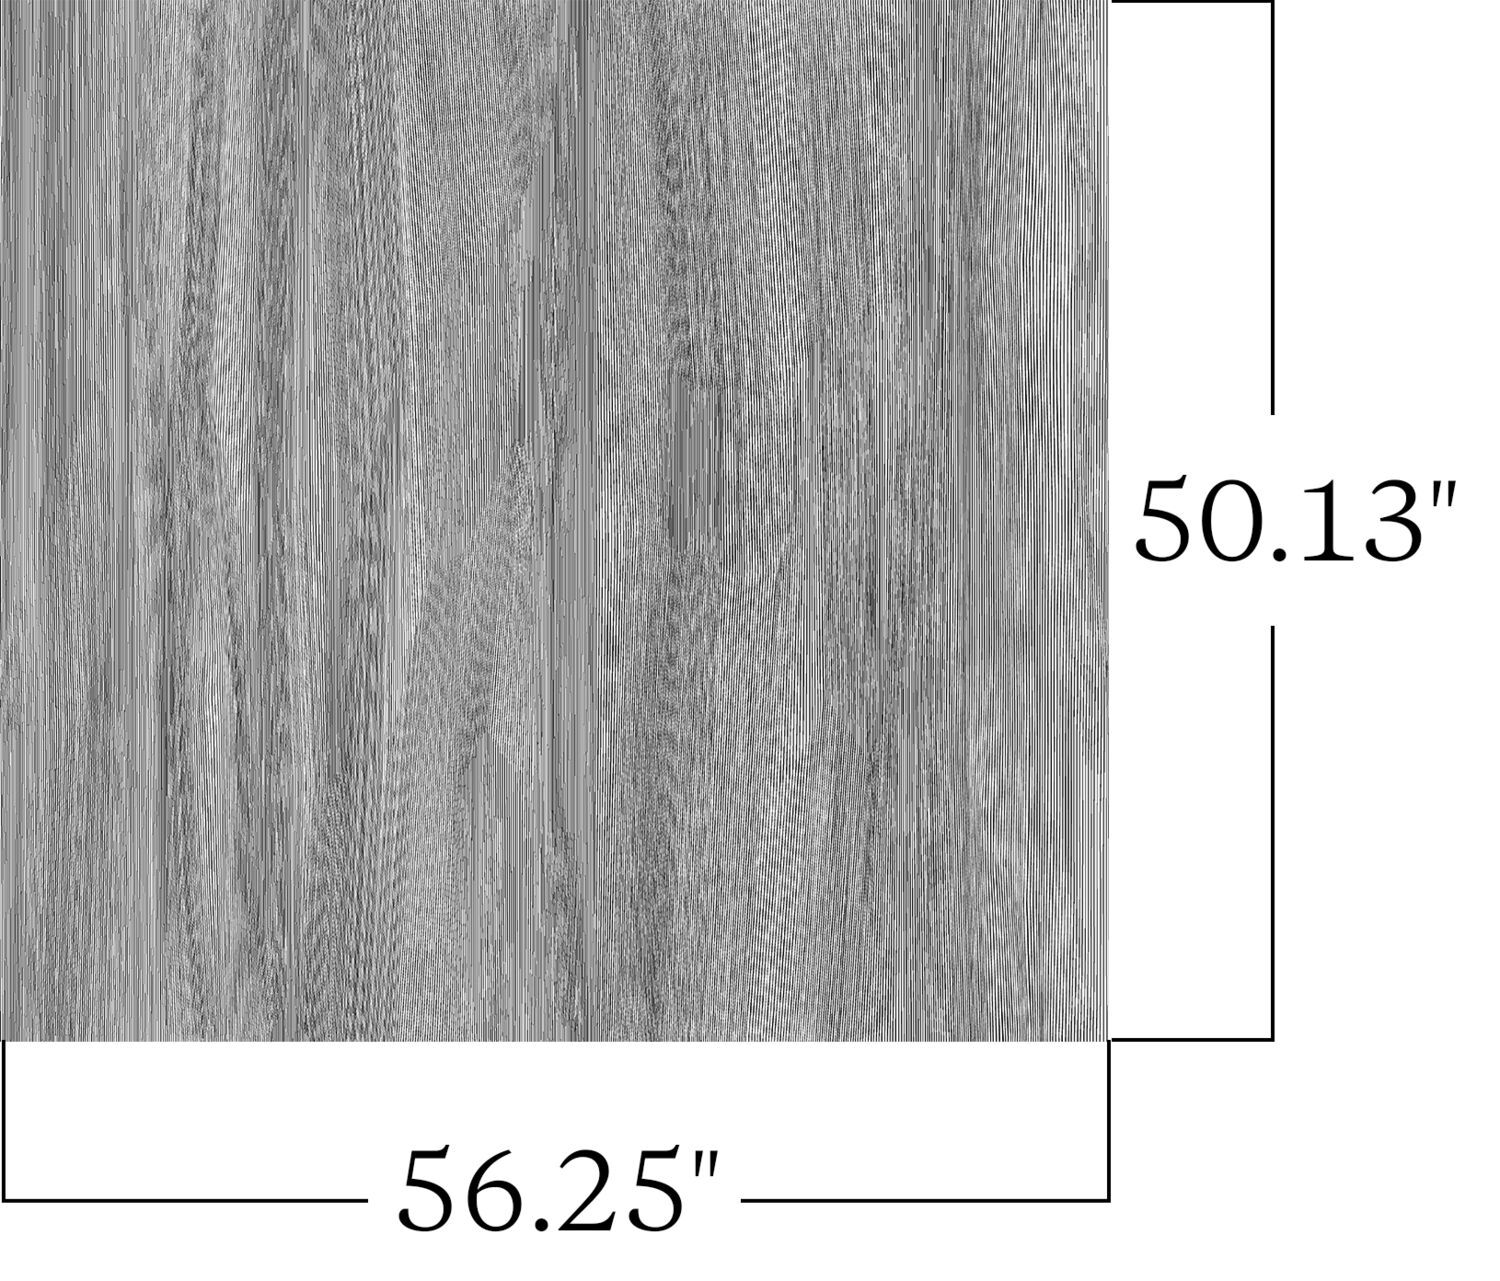 Juxtapose - Timber - 7020 - 04 - Half Yard Pattern Repeat Image